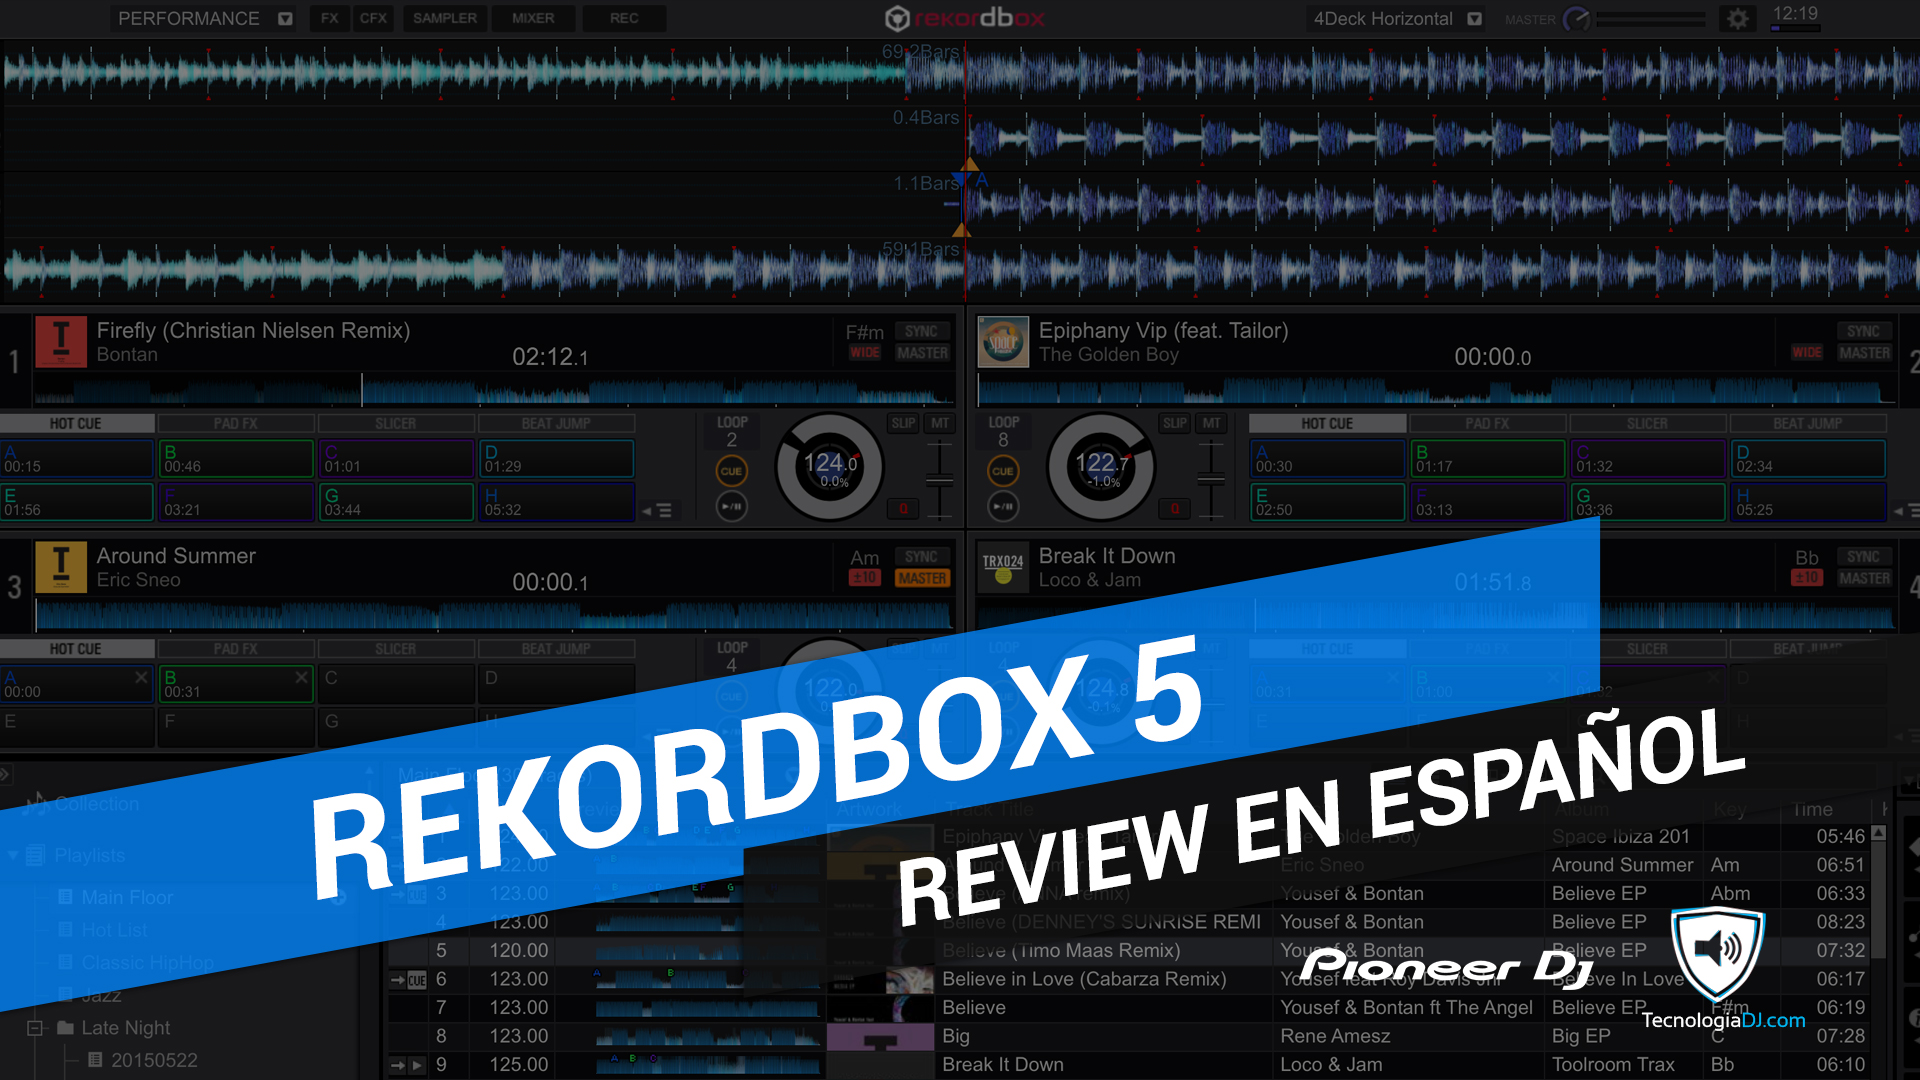 Review en español Rekordbox 5